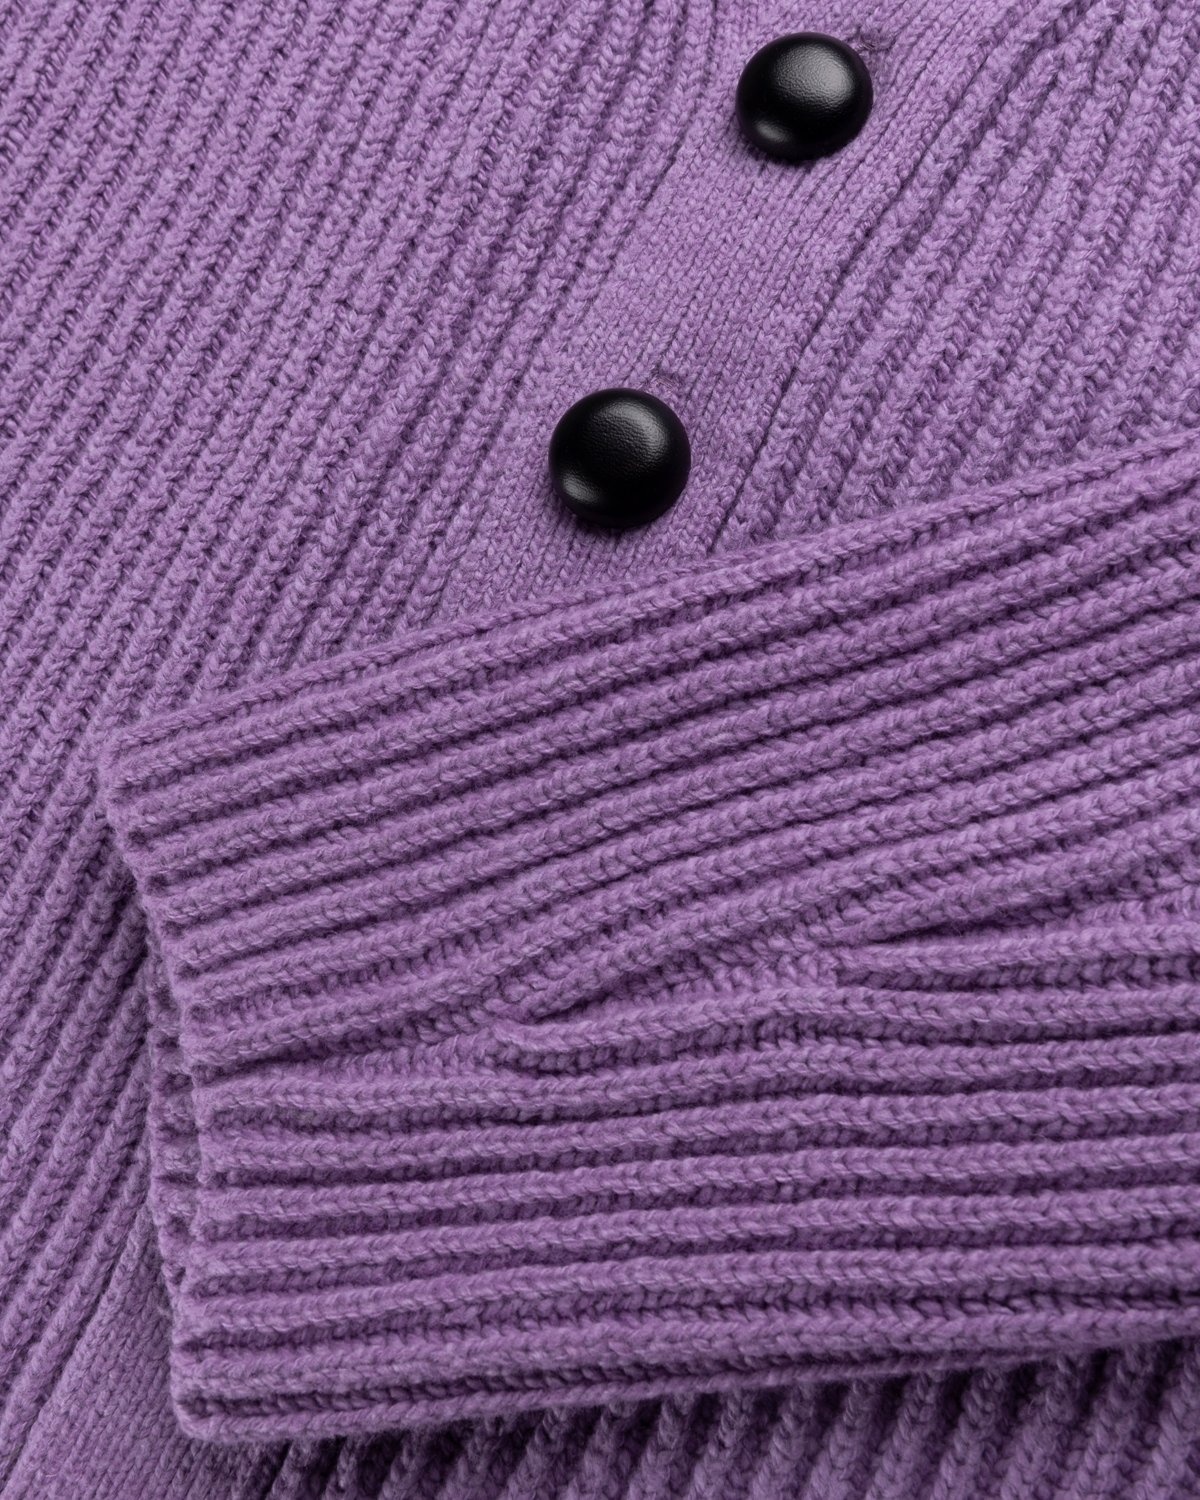 Jil Sander – Rib Knit Cardigan Medium Purple - Knitwear - Purple - Image 5